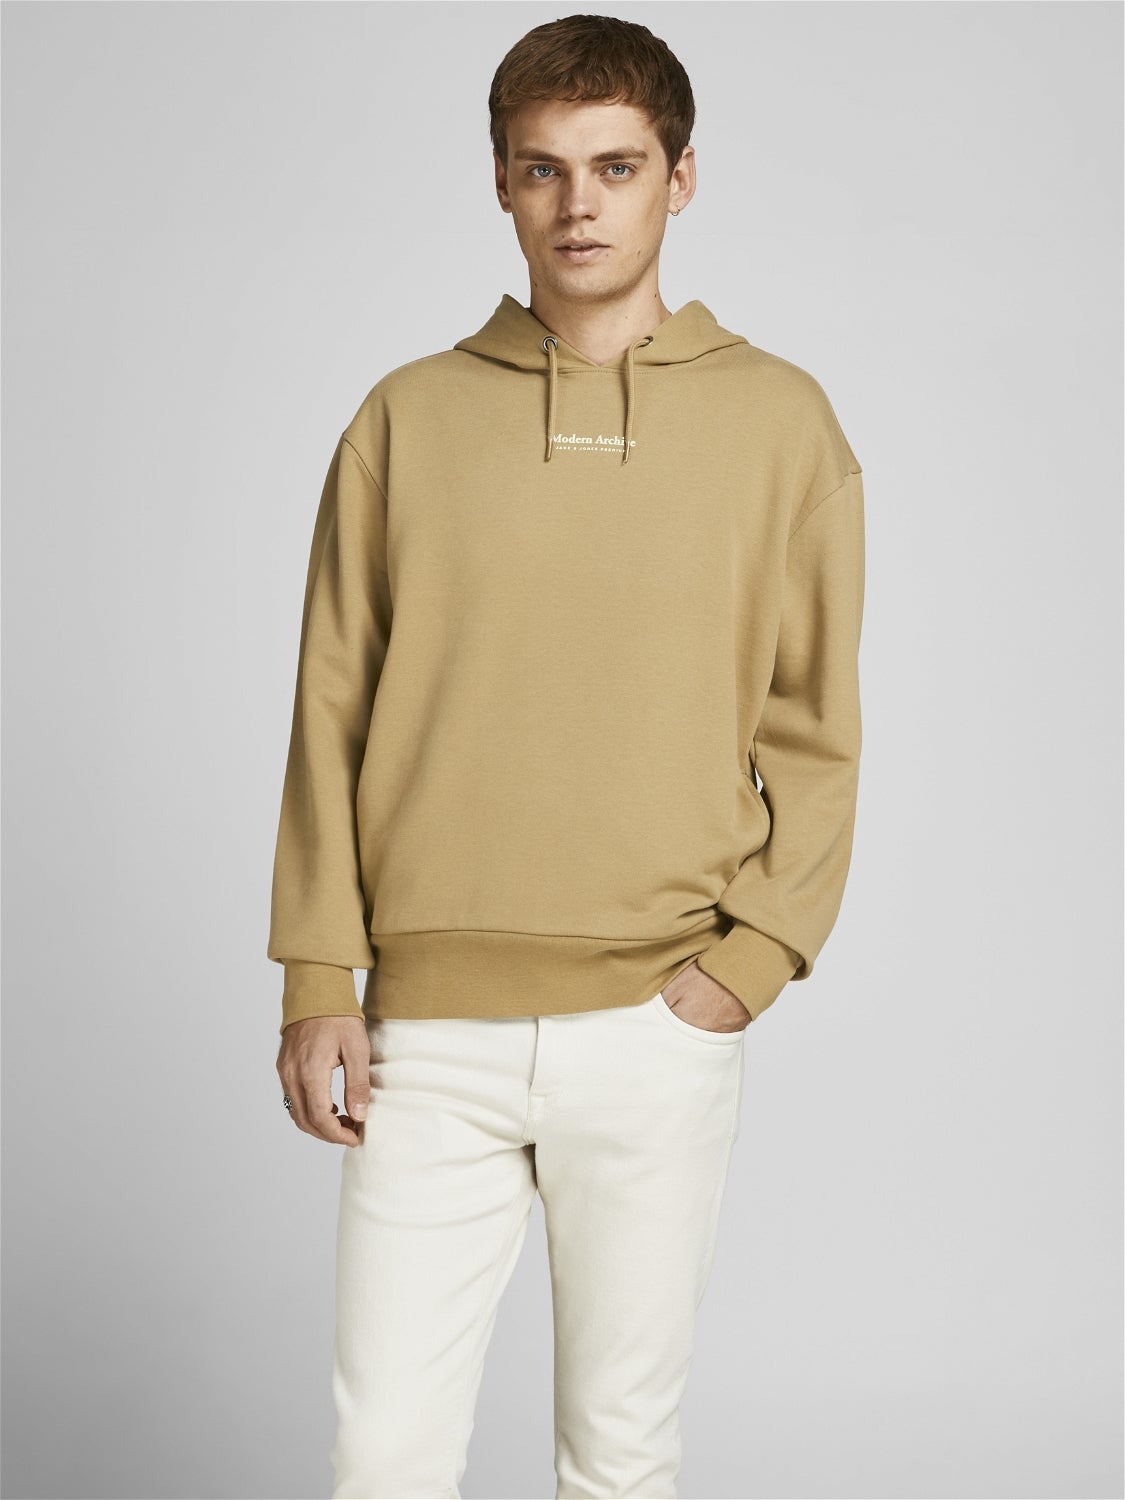 HERREN Pullovers & Sweatshirts Ohne Kapuze Braun L Rabatt 57 % Jack & Jones sweatshirt 